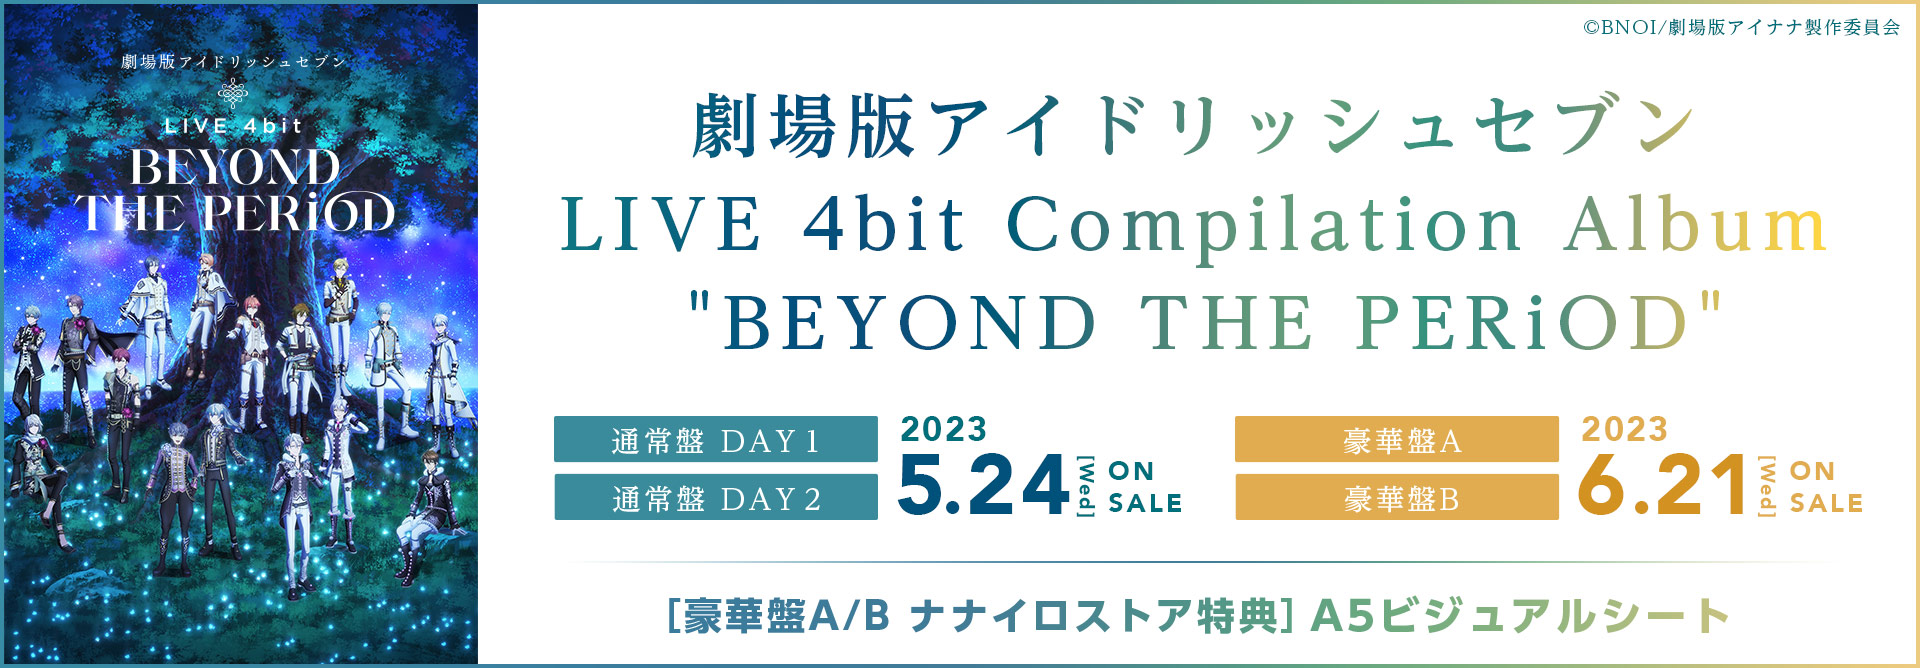 『劇場版アイドリッシュセブン LIVE 4bit BEYOND THE PERiOD』コンピレーションアルバム